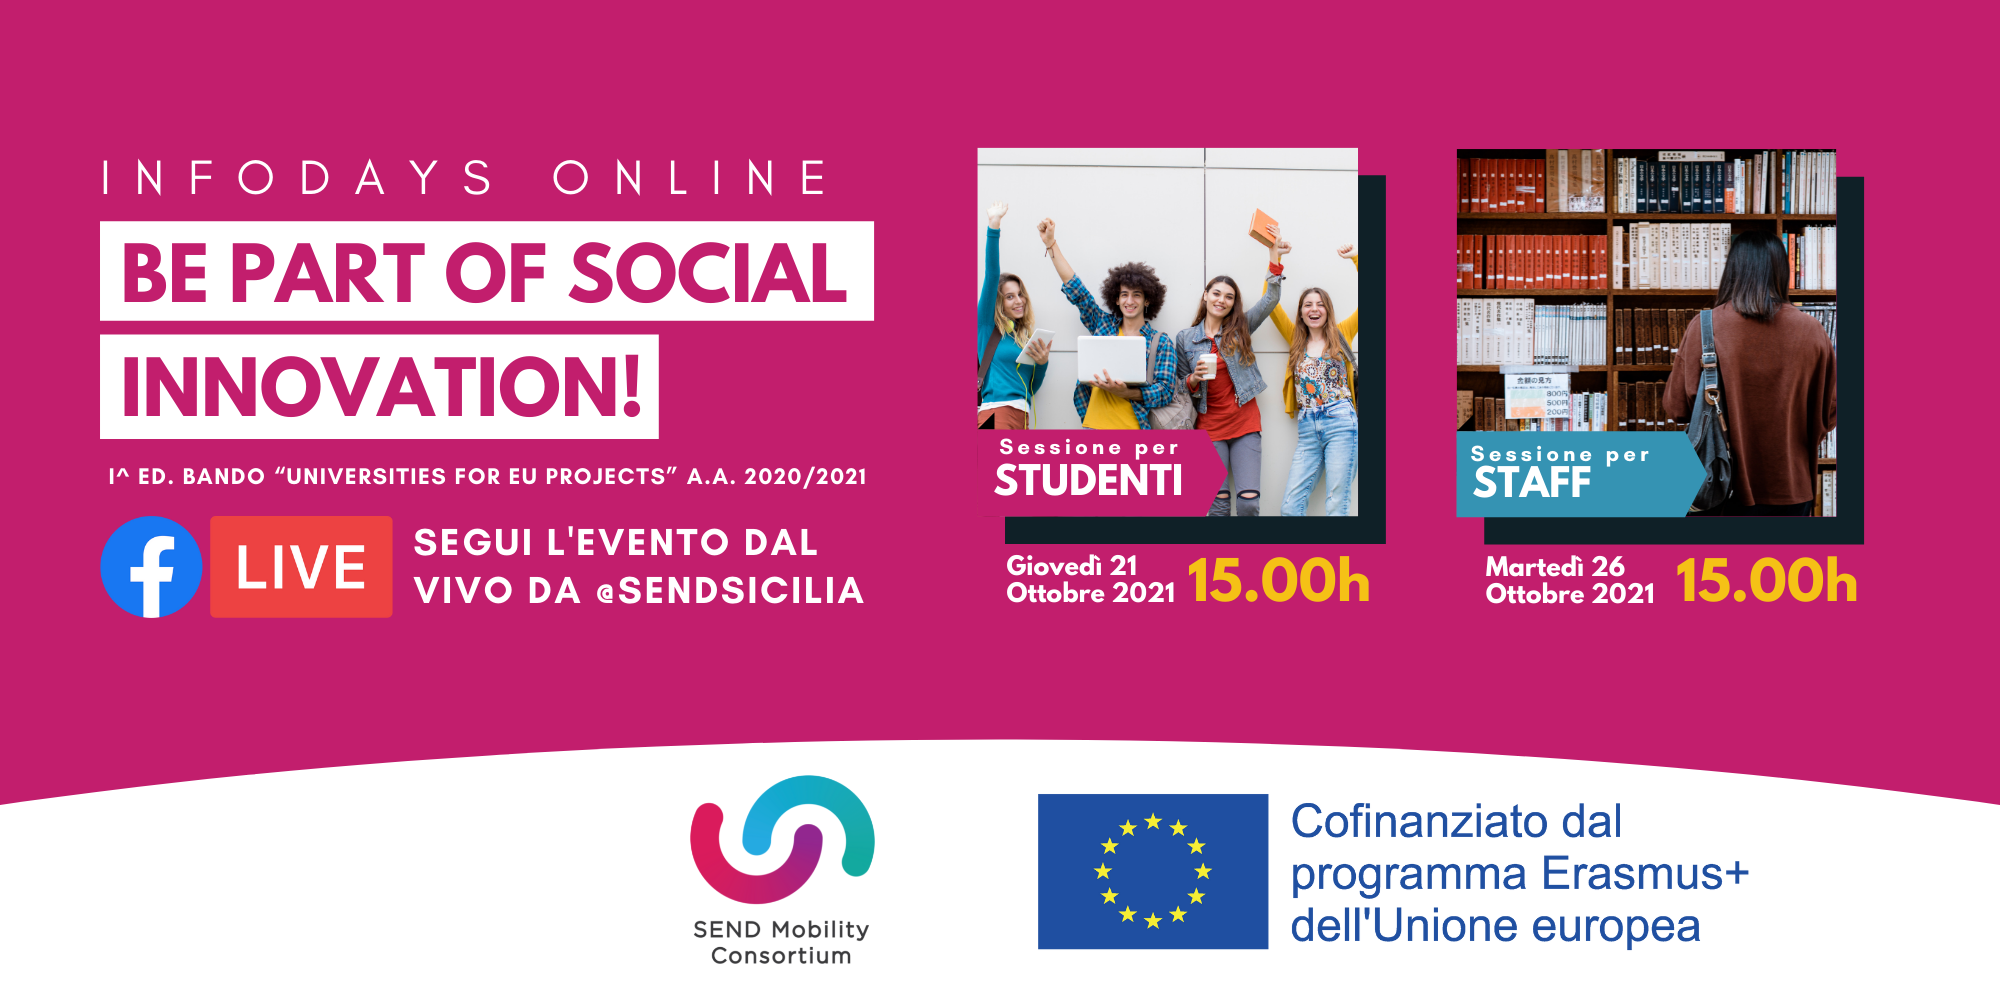 INFODAY ONLINE: Bando Erasmus+ del Consorzio SEND